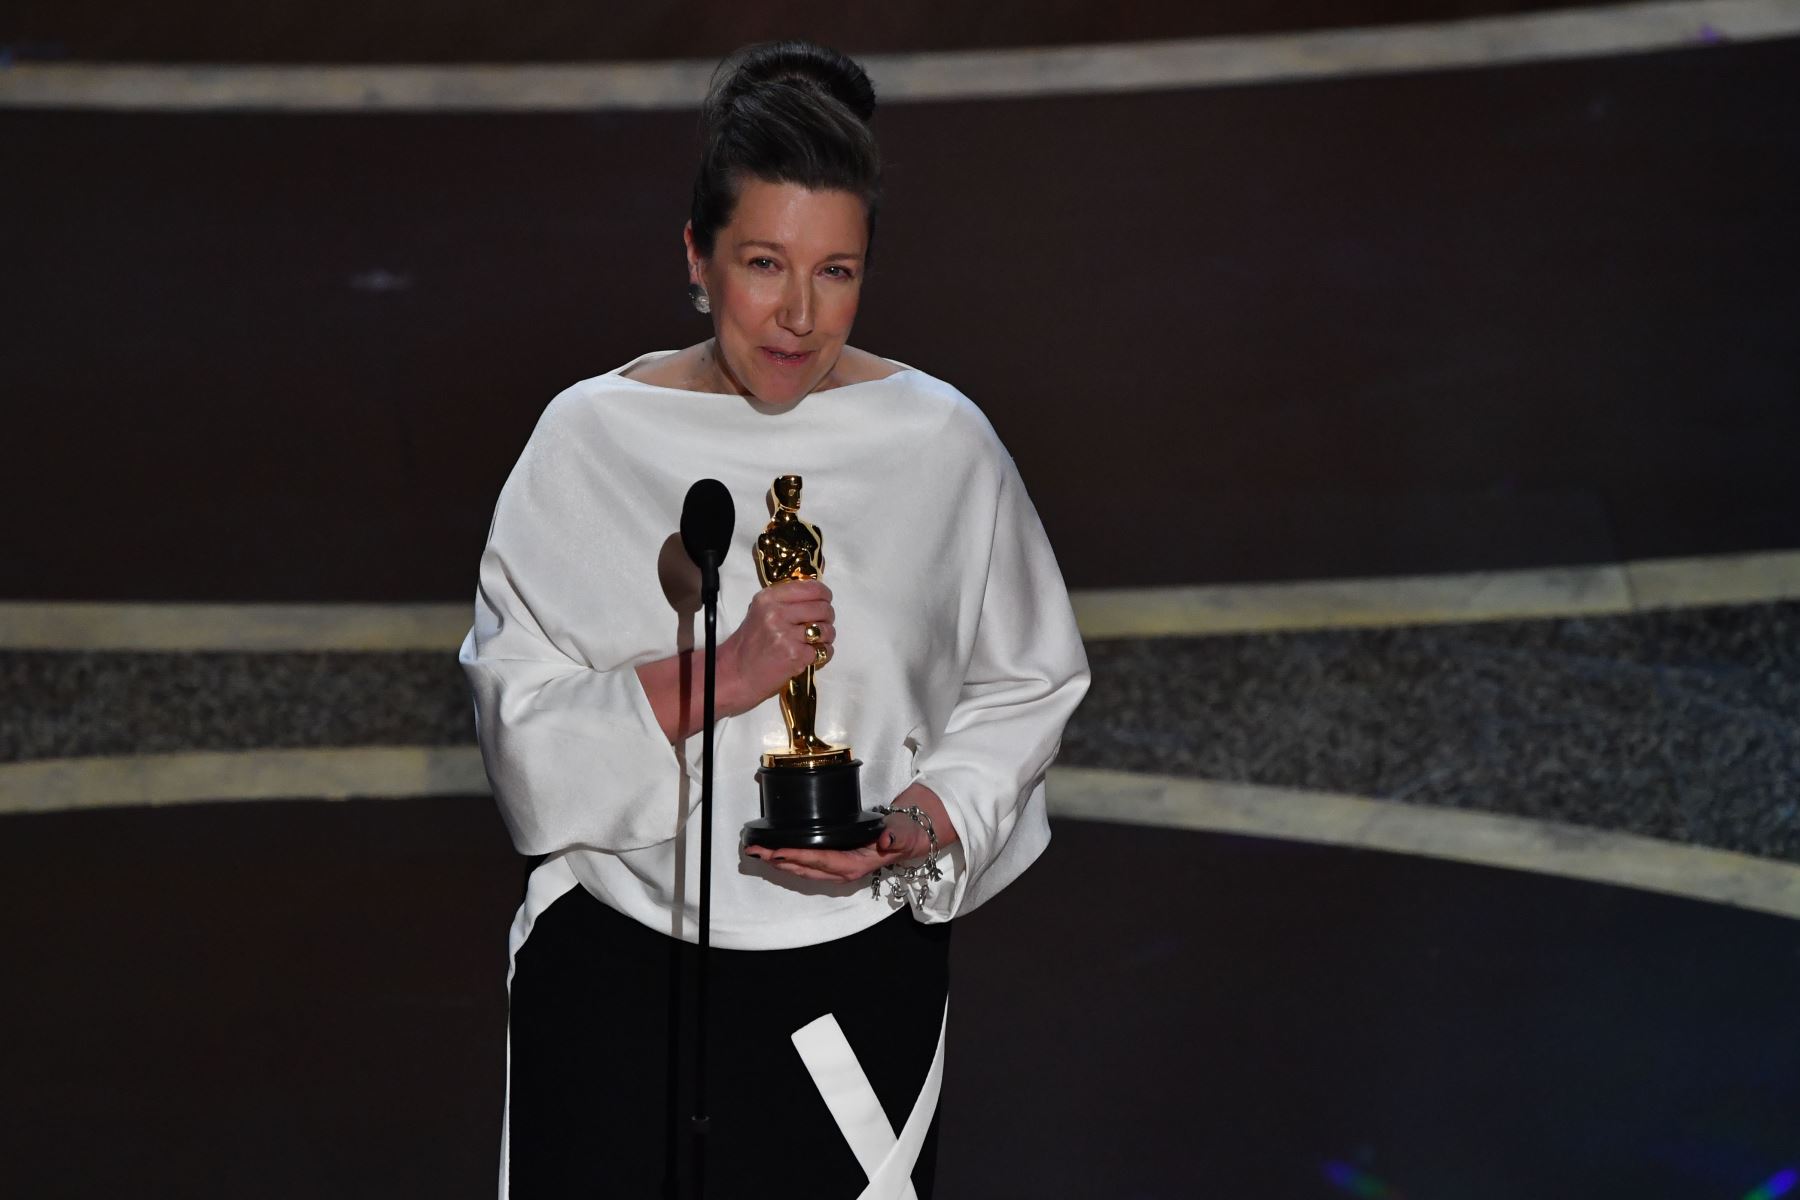 La diseñadora de vestuario británica Jacqueline Durran acepta el premio al mejor diseño de vestuario para "Little Women" durante la 92a edición de los Oscar en el Dolby Theatre de Hollywood, California.
Foto: AFP